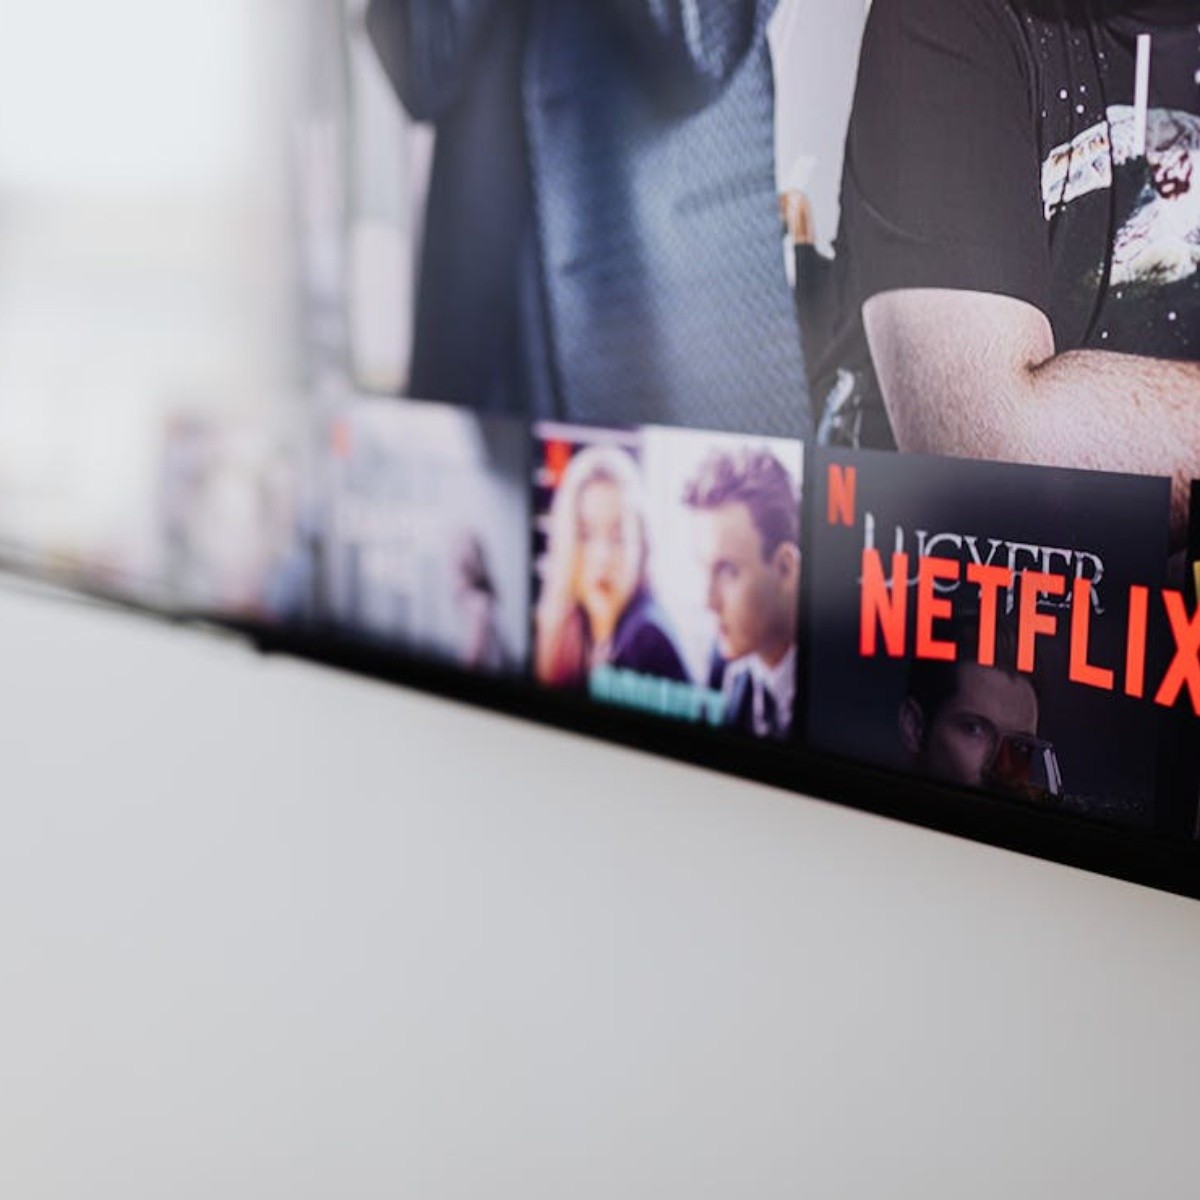 cinco smart tv con roku de oferta en bodega aurrera desde 2,000 para ver netflix, youtube y más